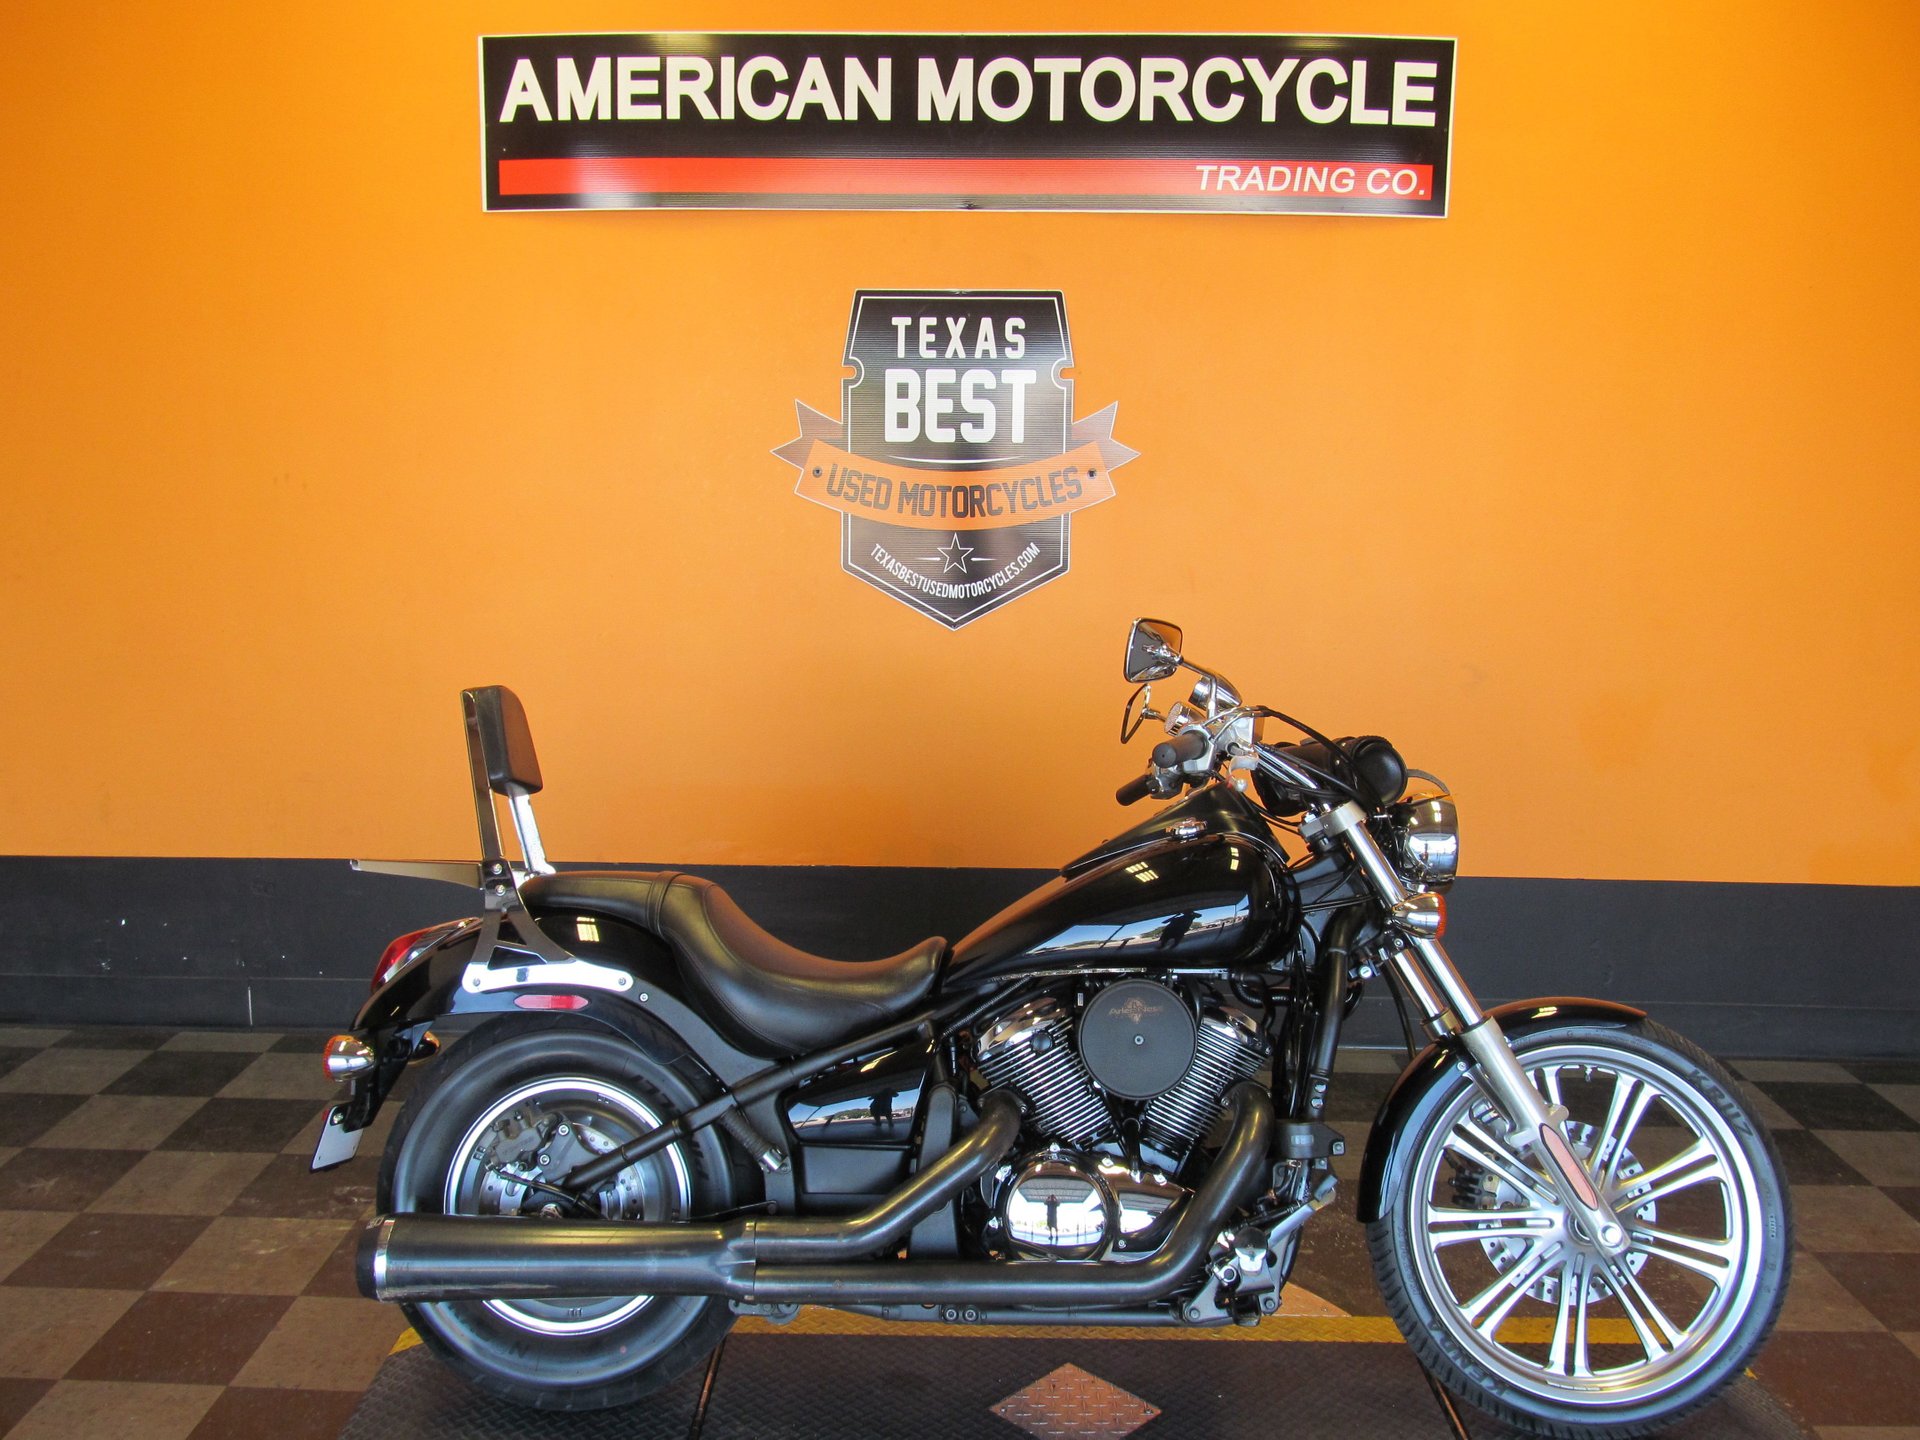 2009 Kawasaki Vulcan | American Motorcycle Trading Company - Used Harley  Davidson Motorcycles